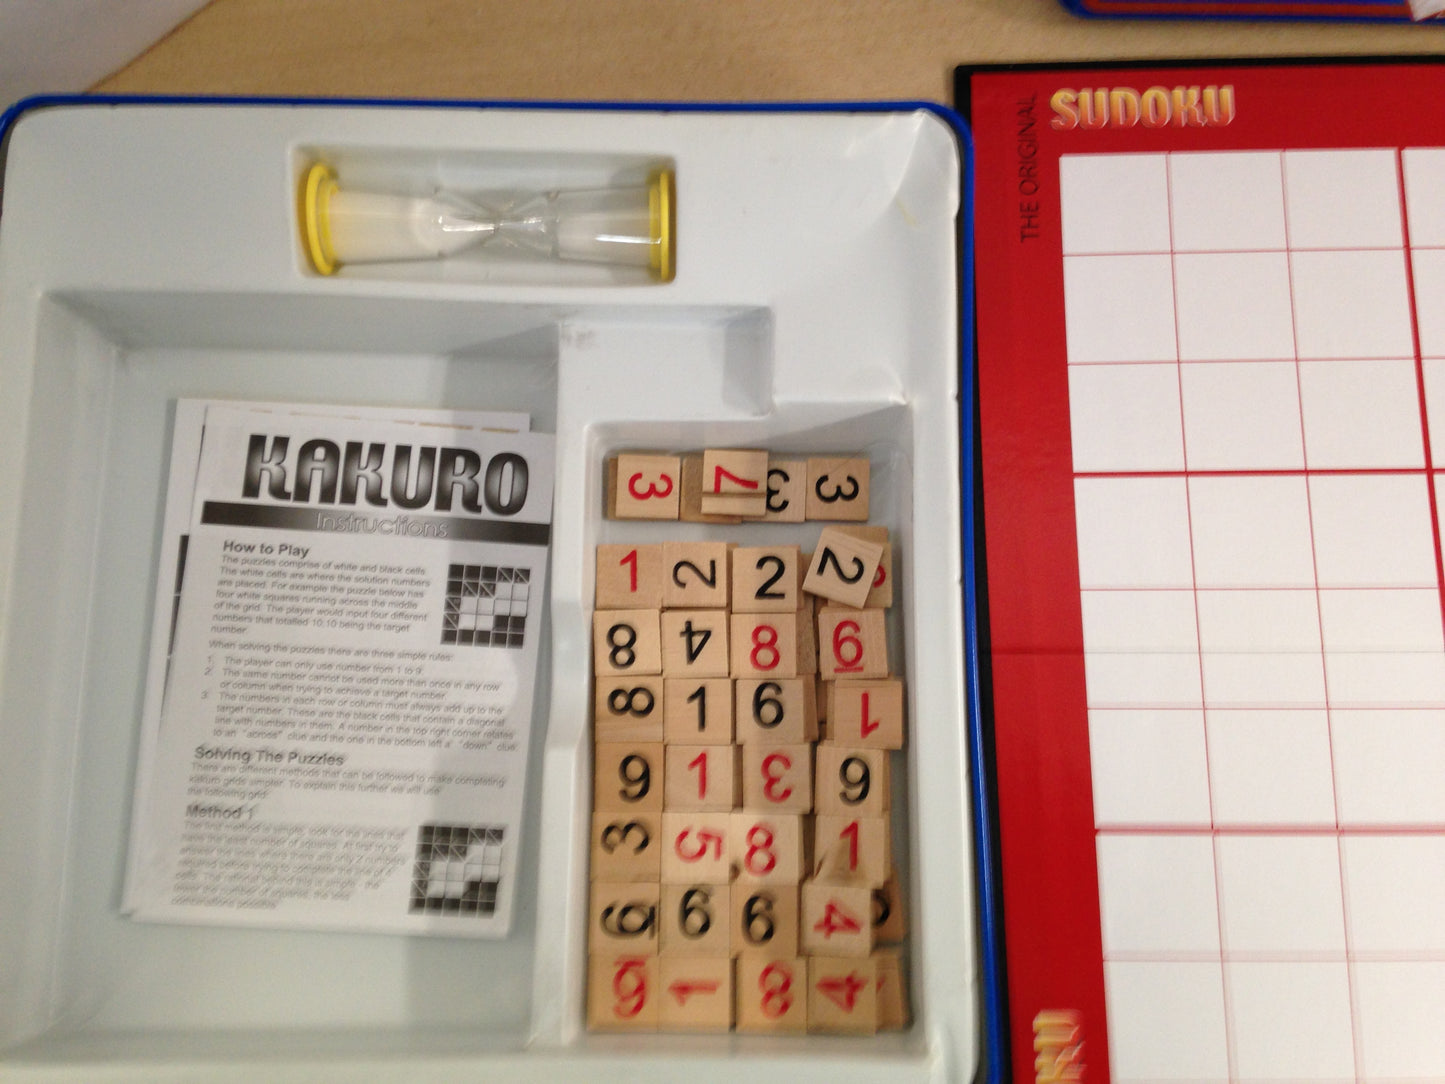 Game Sudoku The Original Complete RARE